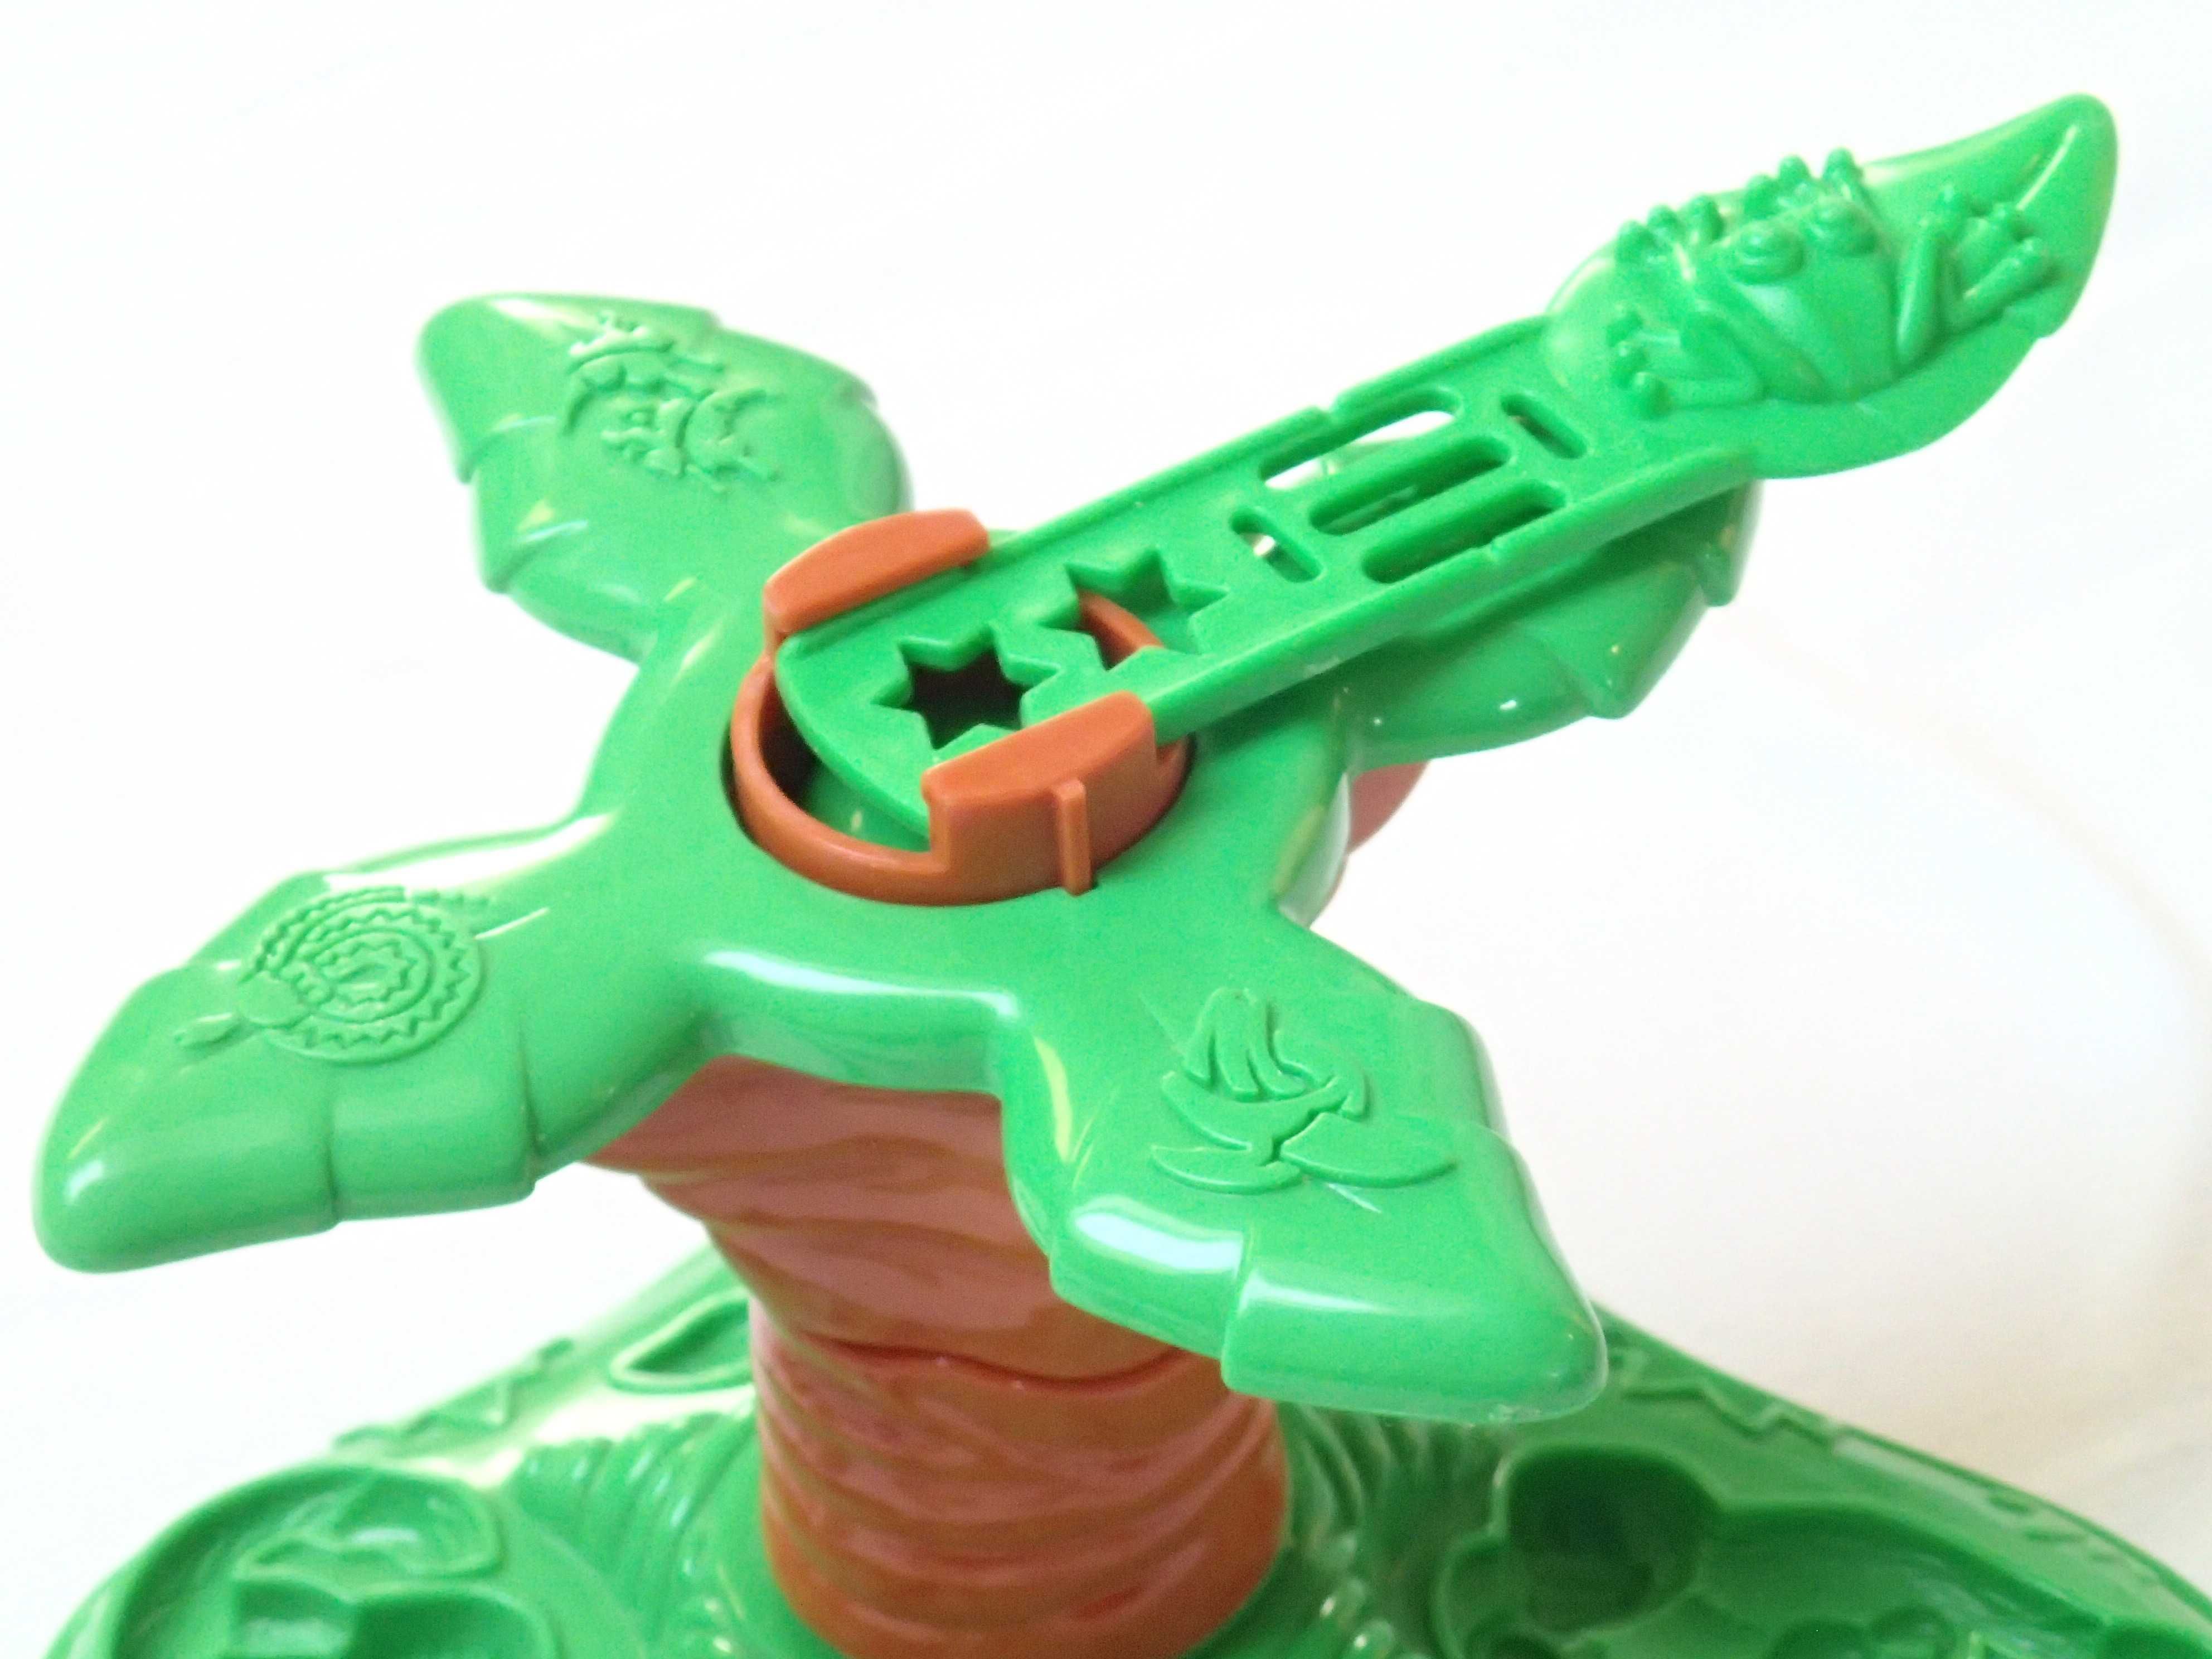 Zestaw do ciastoliny PlayDoh wyciskarka praska 14 elementów